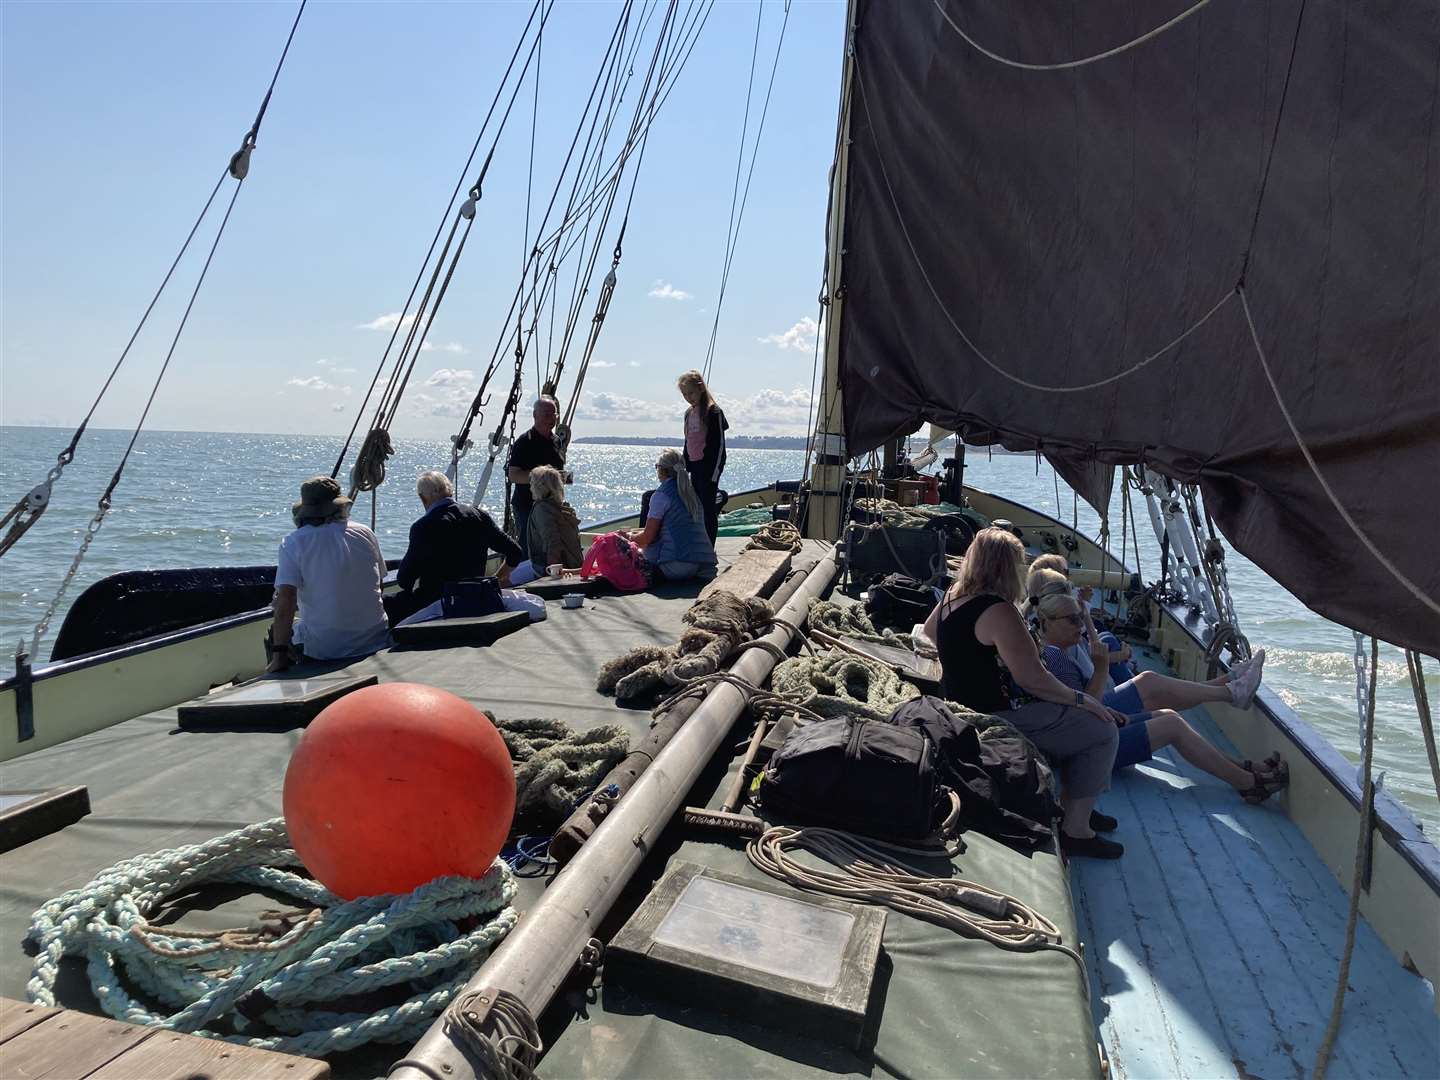 Under sail: Thames sailing barge the Edith May